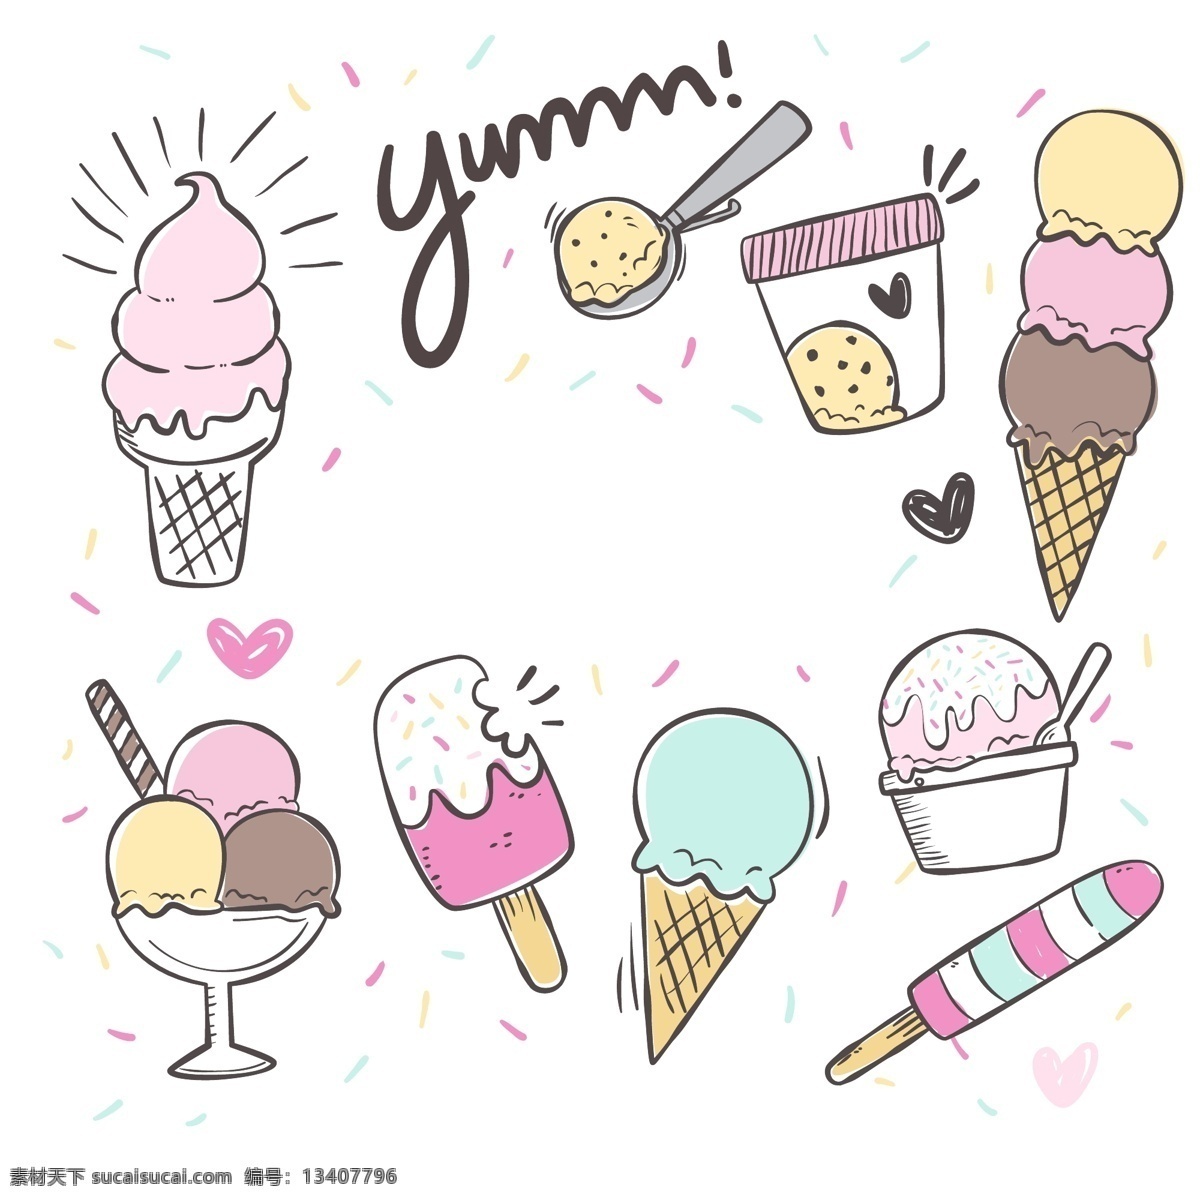 卡通 手绘 风格 冰淇淋 甜筒 插画 可爱 雪糕 彩色冰淇淋 冰淇淋球 冰淇淋勺